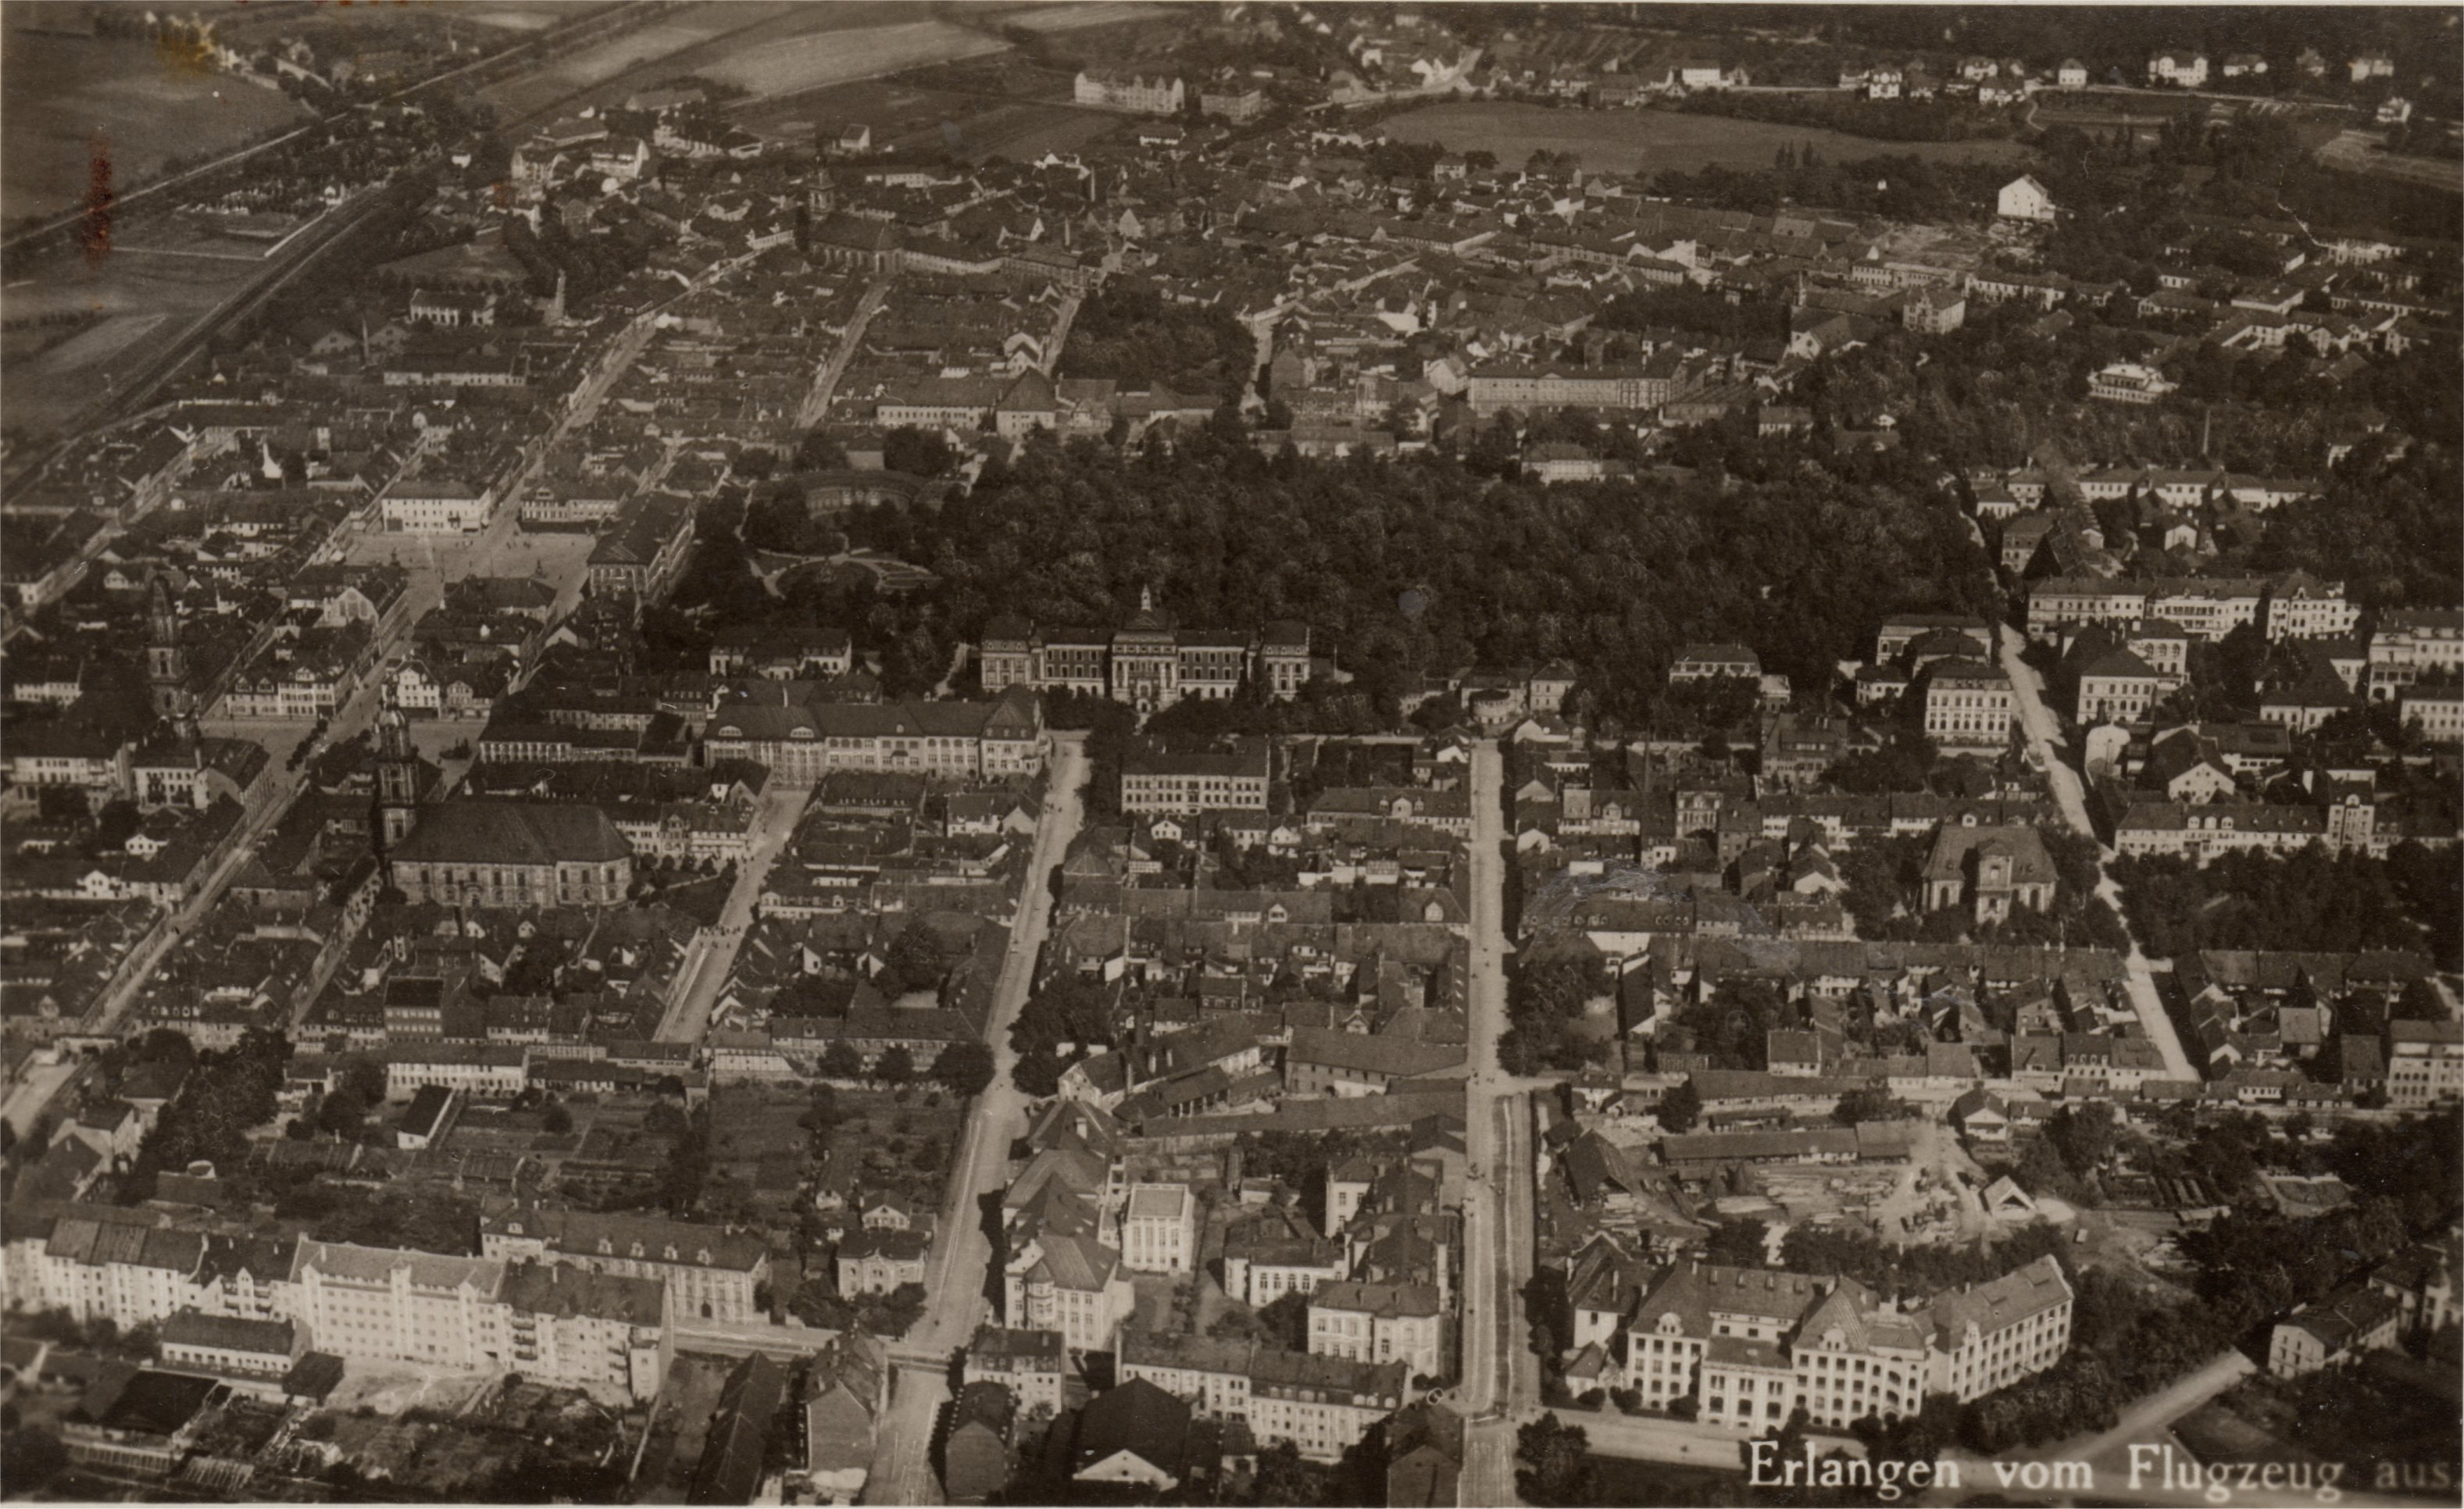 Luftbild Erlangen um 1928/30